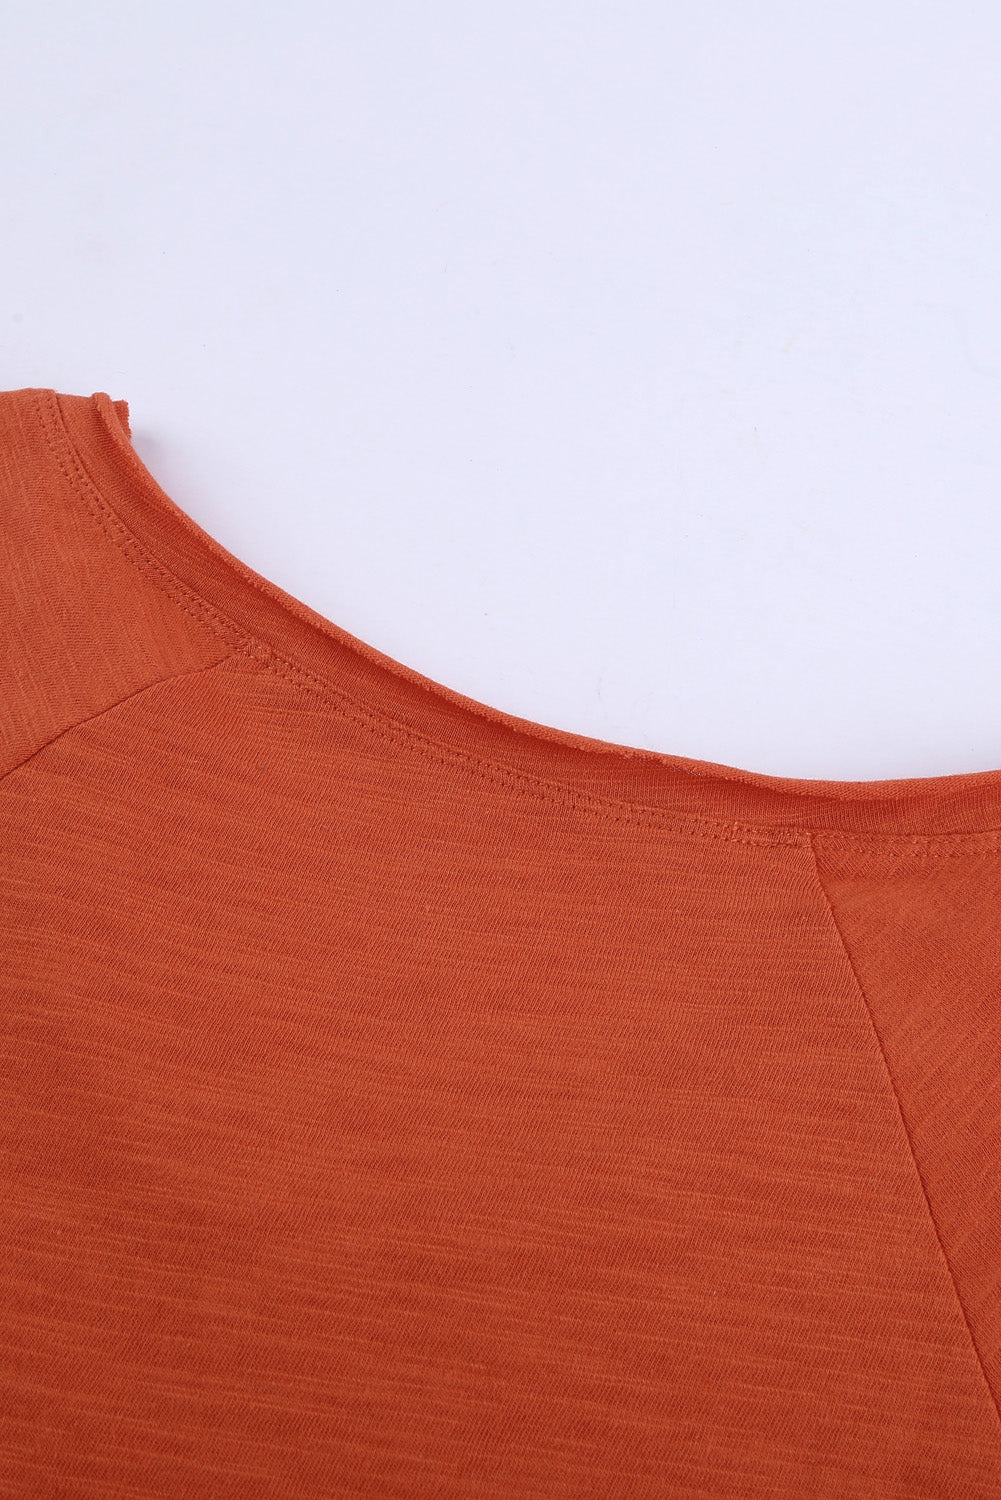 Orange V Neck Short Sleeves Cotton Blend Tee With Front Pocket And Side Slits